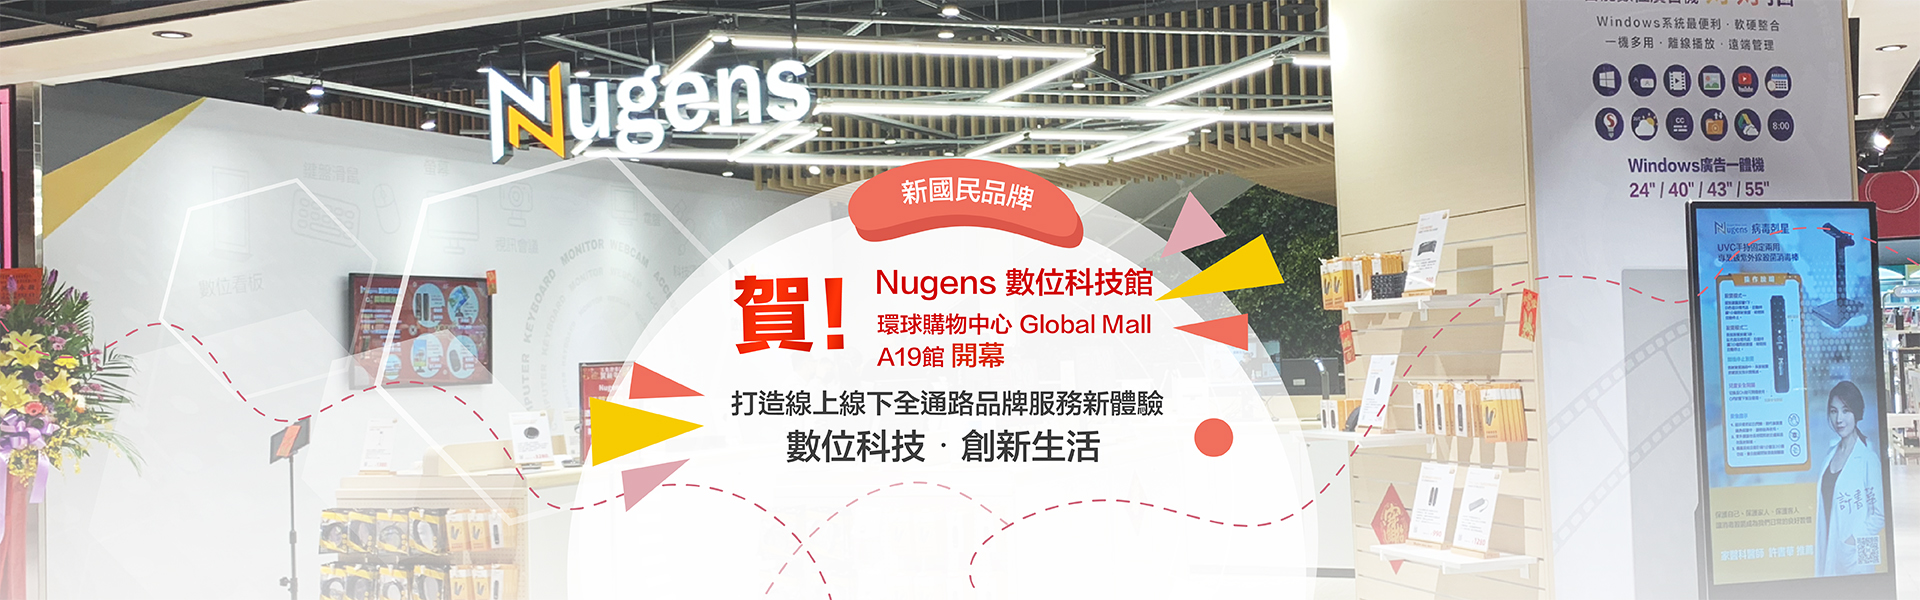 賀!Nugens 數位科技館 桃園環球購物中心Global Mall A19館開幕!